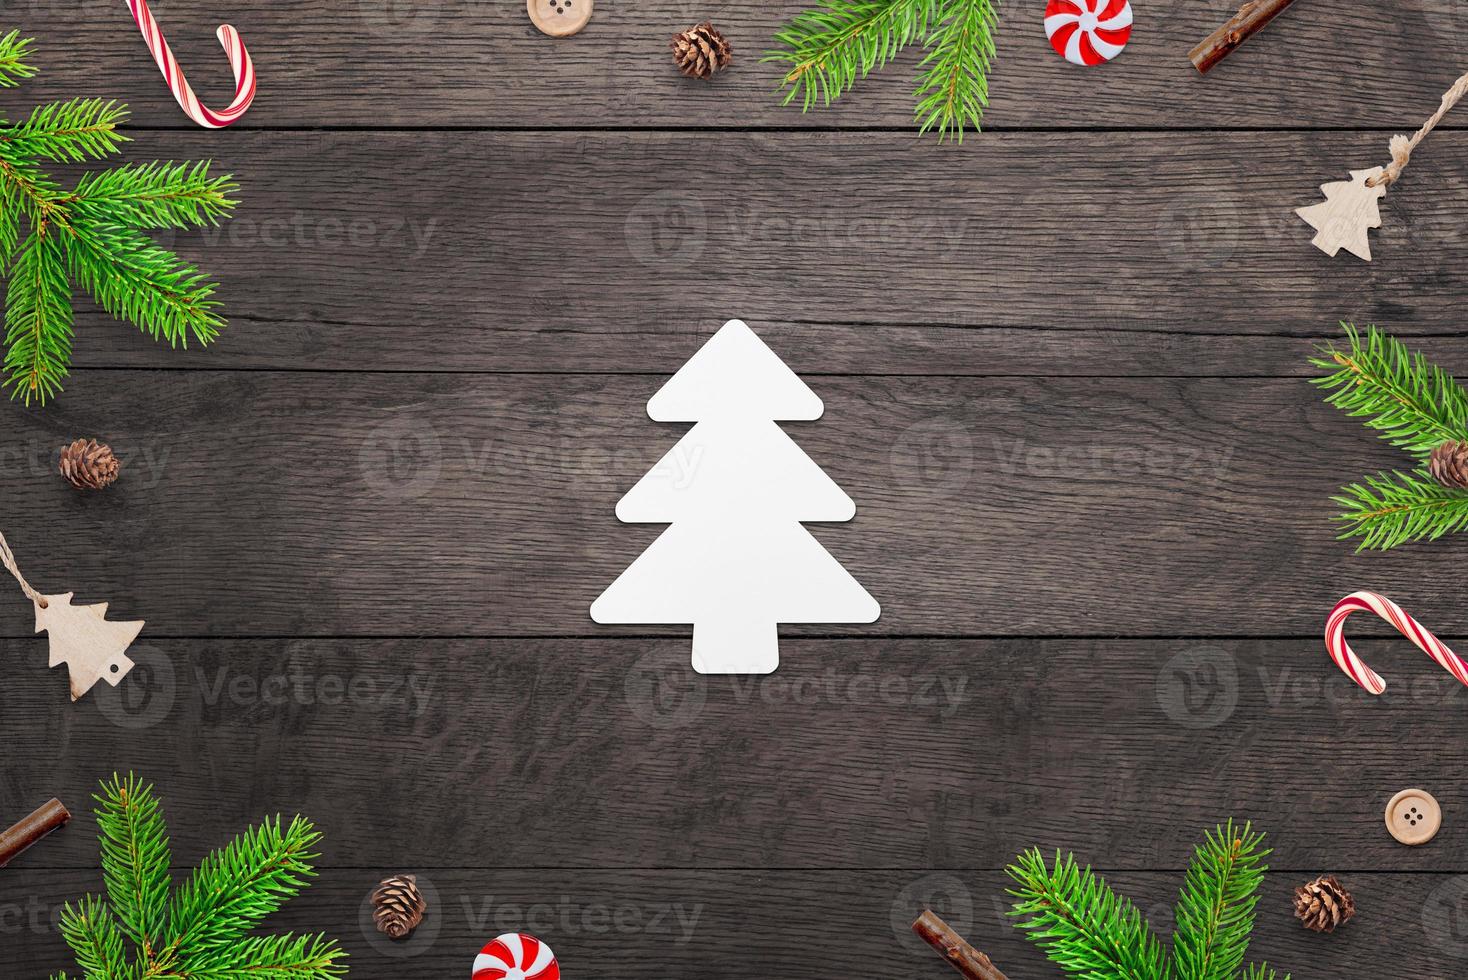 süßer weihnachtsbaum aus papier auf einem holztisch, umgeben von weihnachtsdekorationen. frohe weihnachten grußkarte mit kopierraum foto